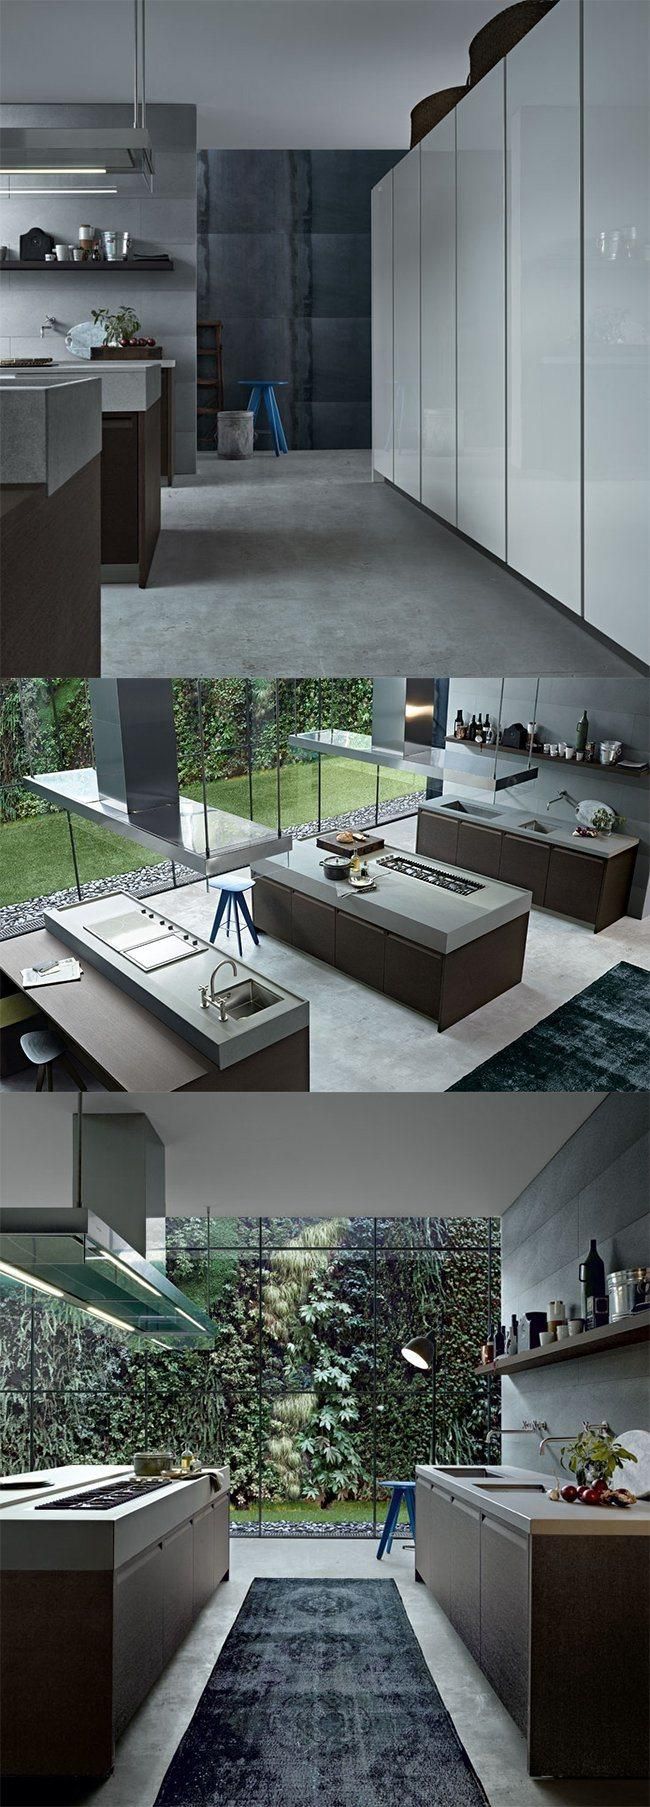 Modern Design Kitchen Cabinet Furniture